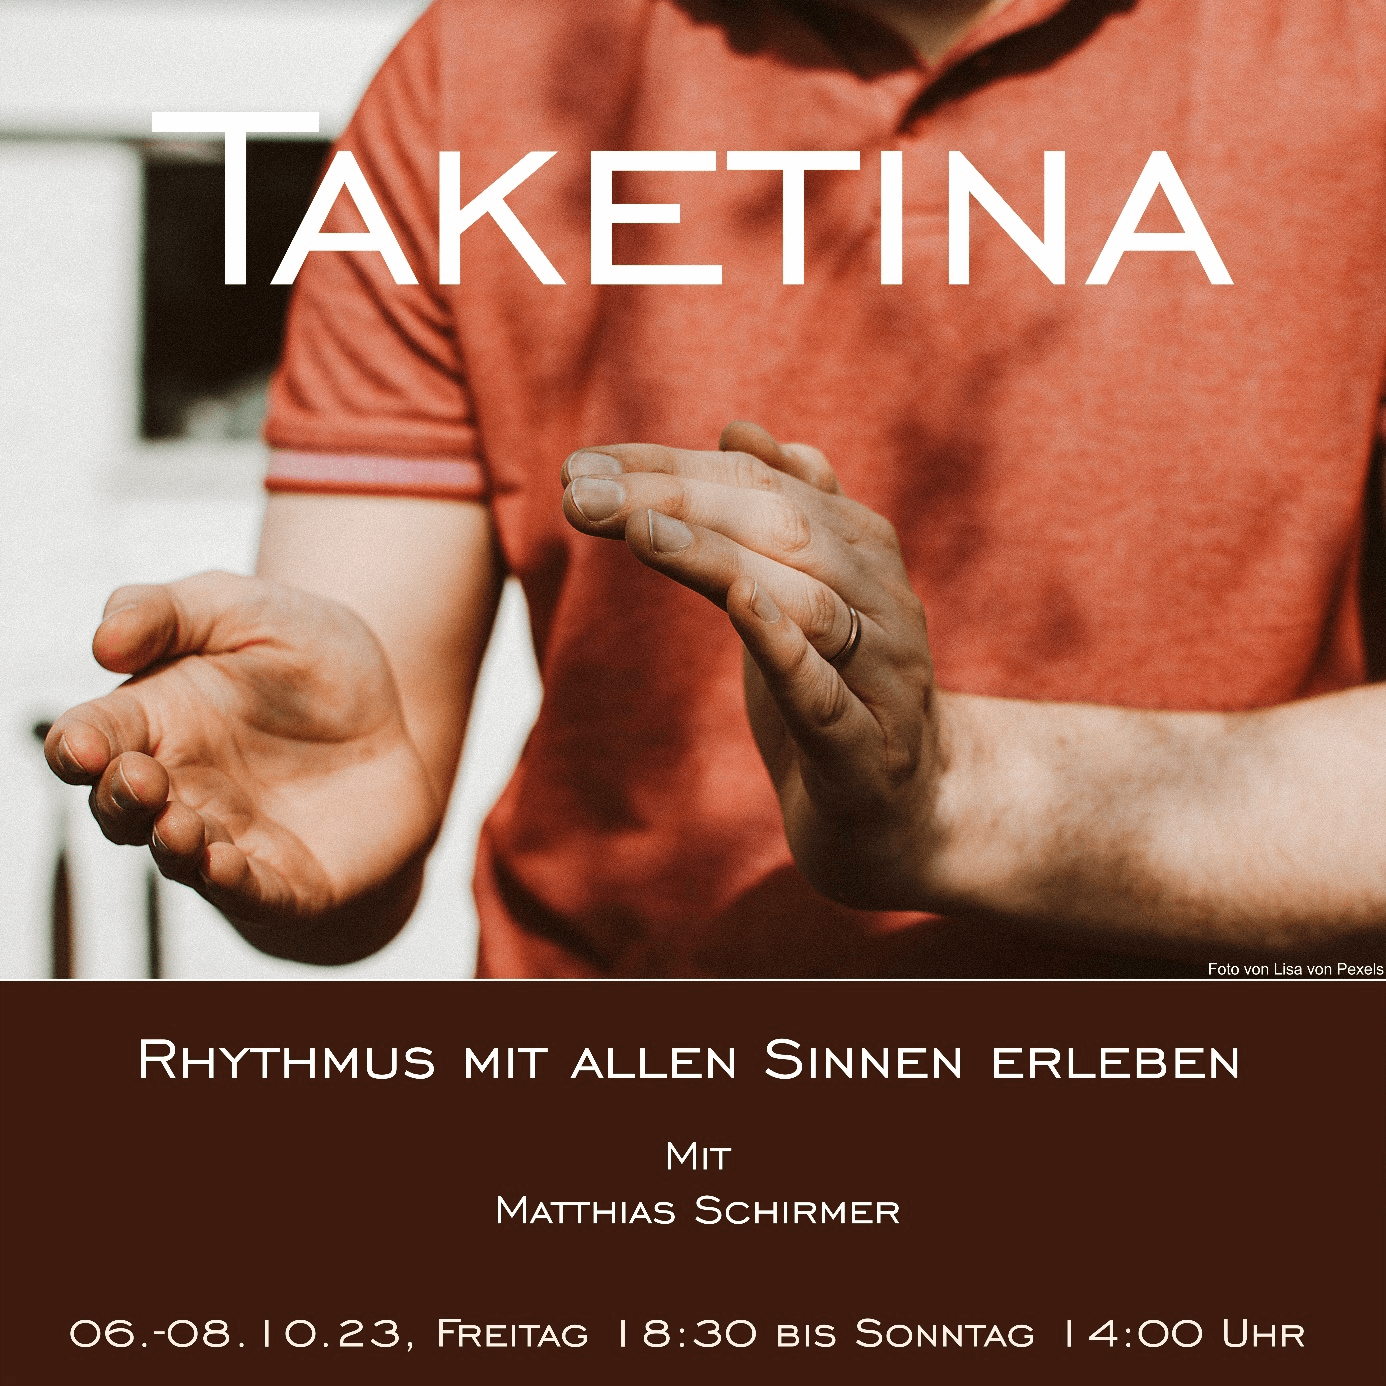 Coverbild für Taketina-Workshop "Rhythmus mit allen Sinnen erleben" mit Matthias Schirmer bei Yoga Inspiration